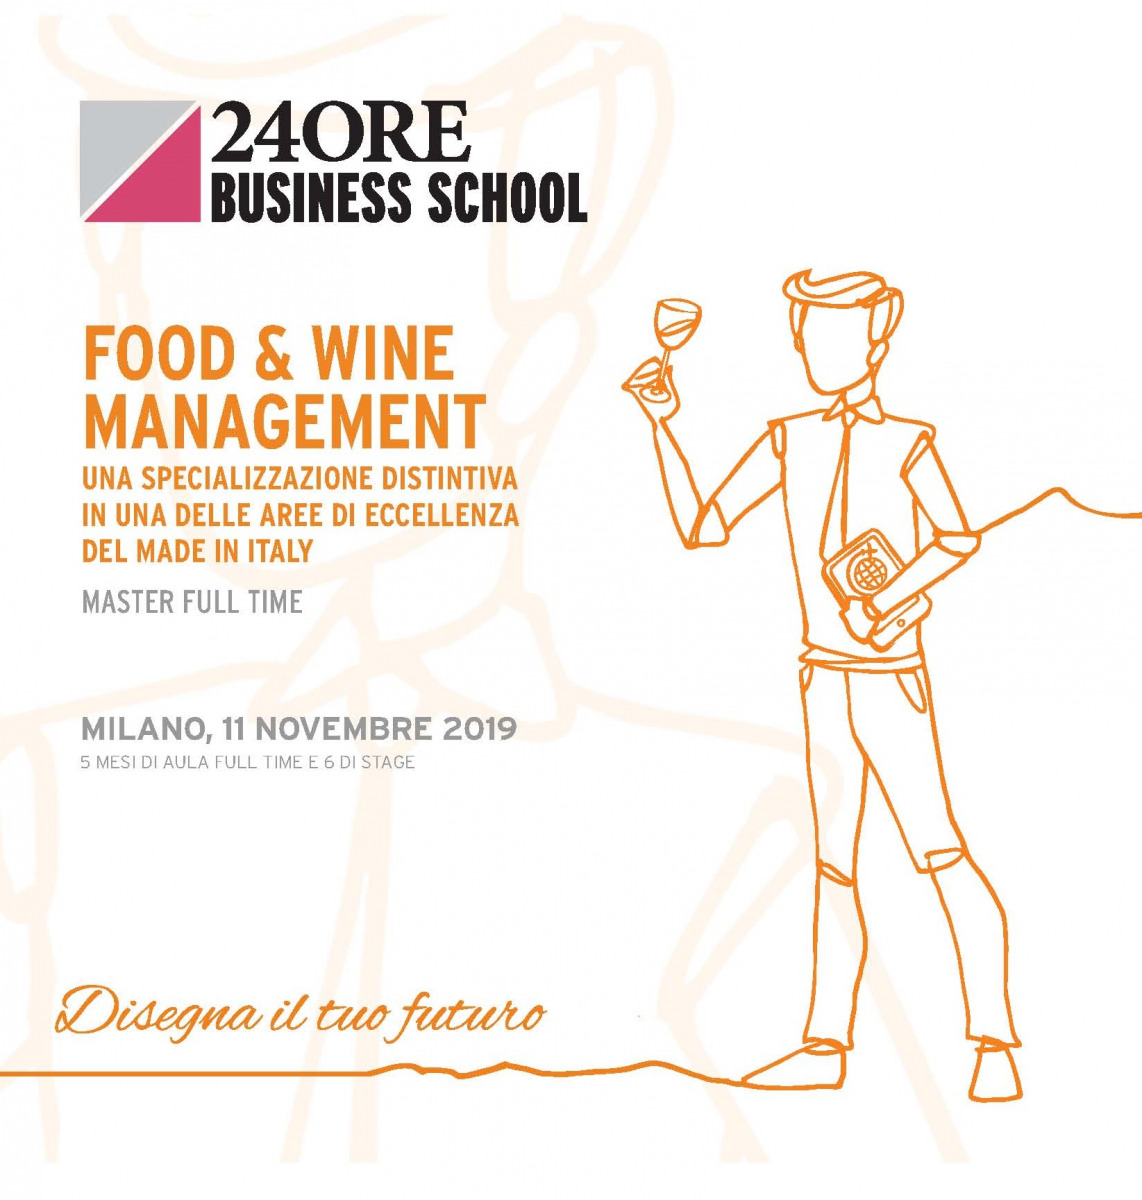 Andrea De Panfilis, Caterina Giacalone e Alberto Passera docenti al Master “Food & Wine Management” organizzato da 24Ore Business School